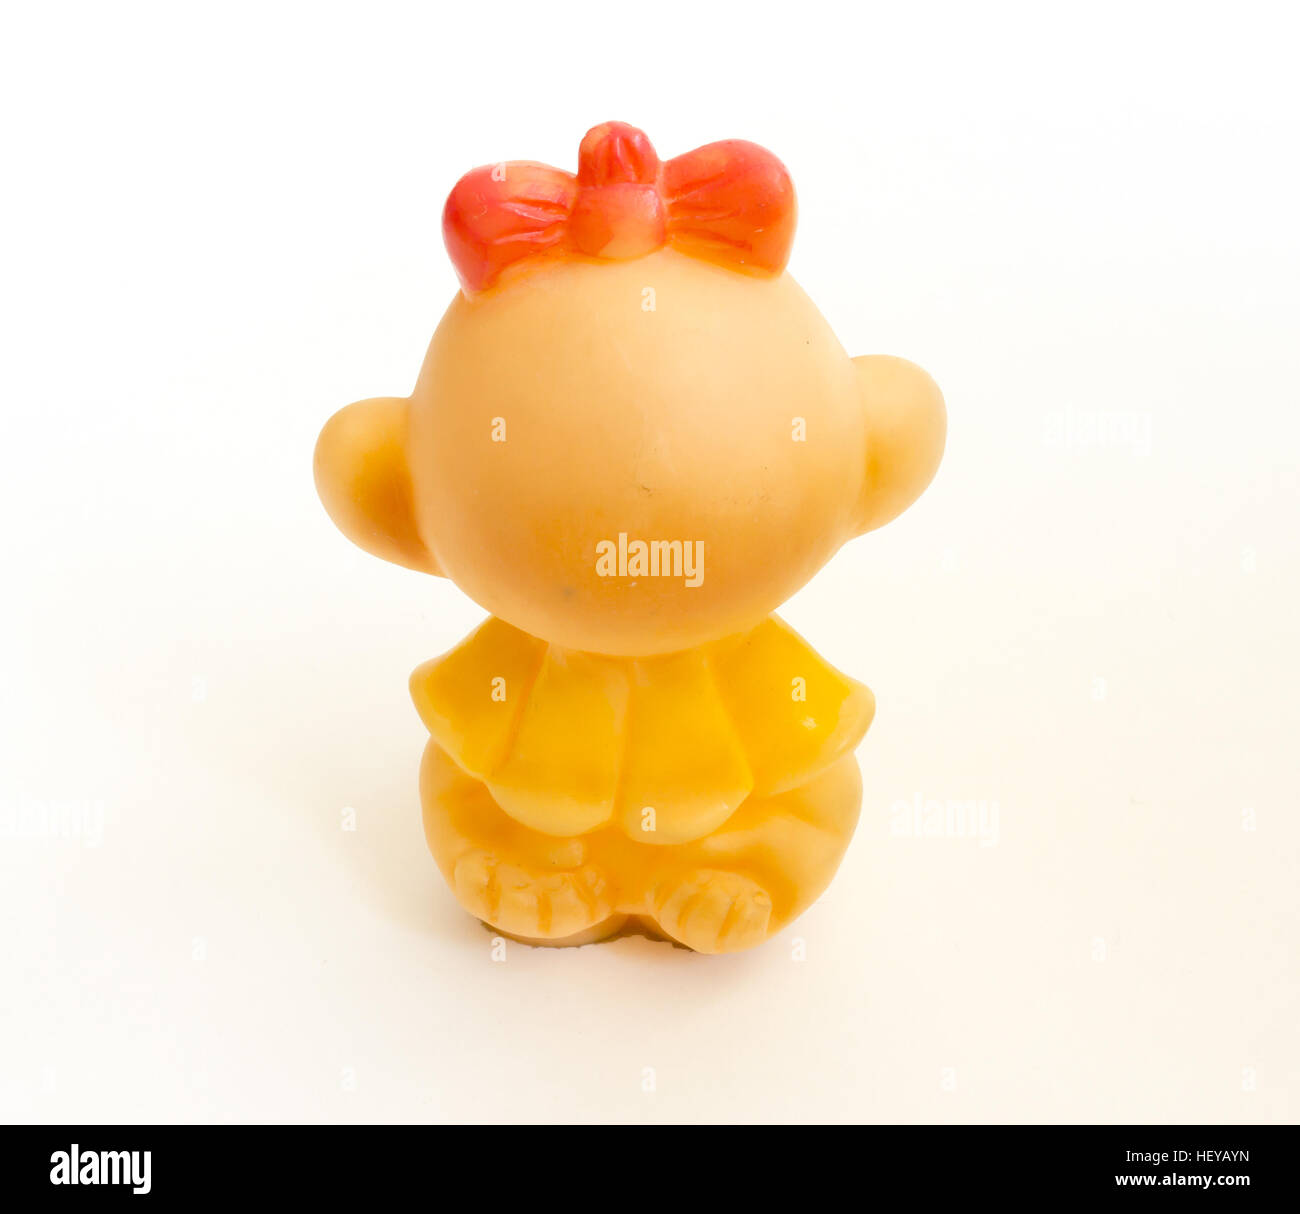 The Miniature toy monkey. Stock Photo